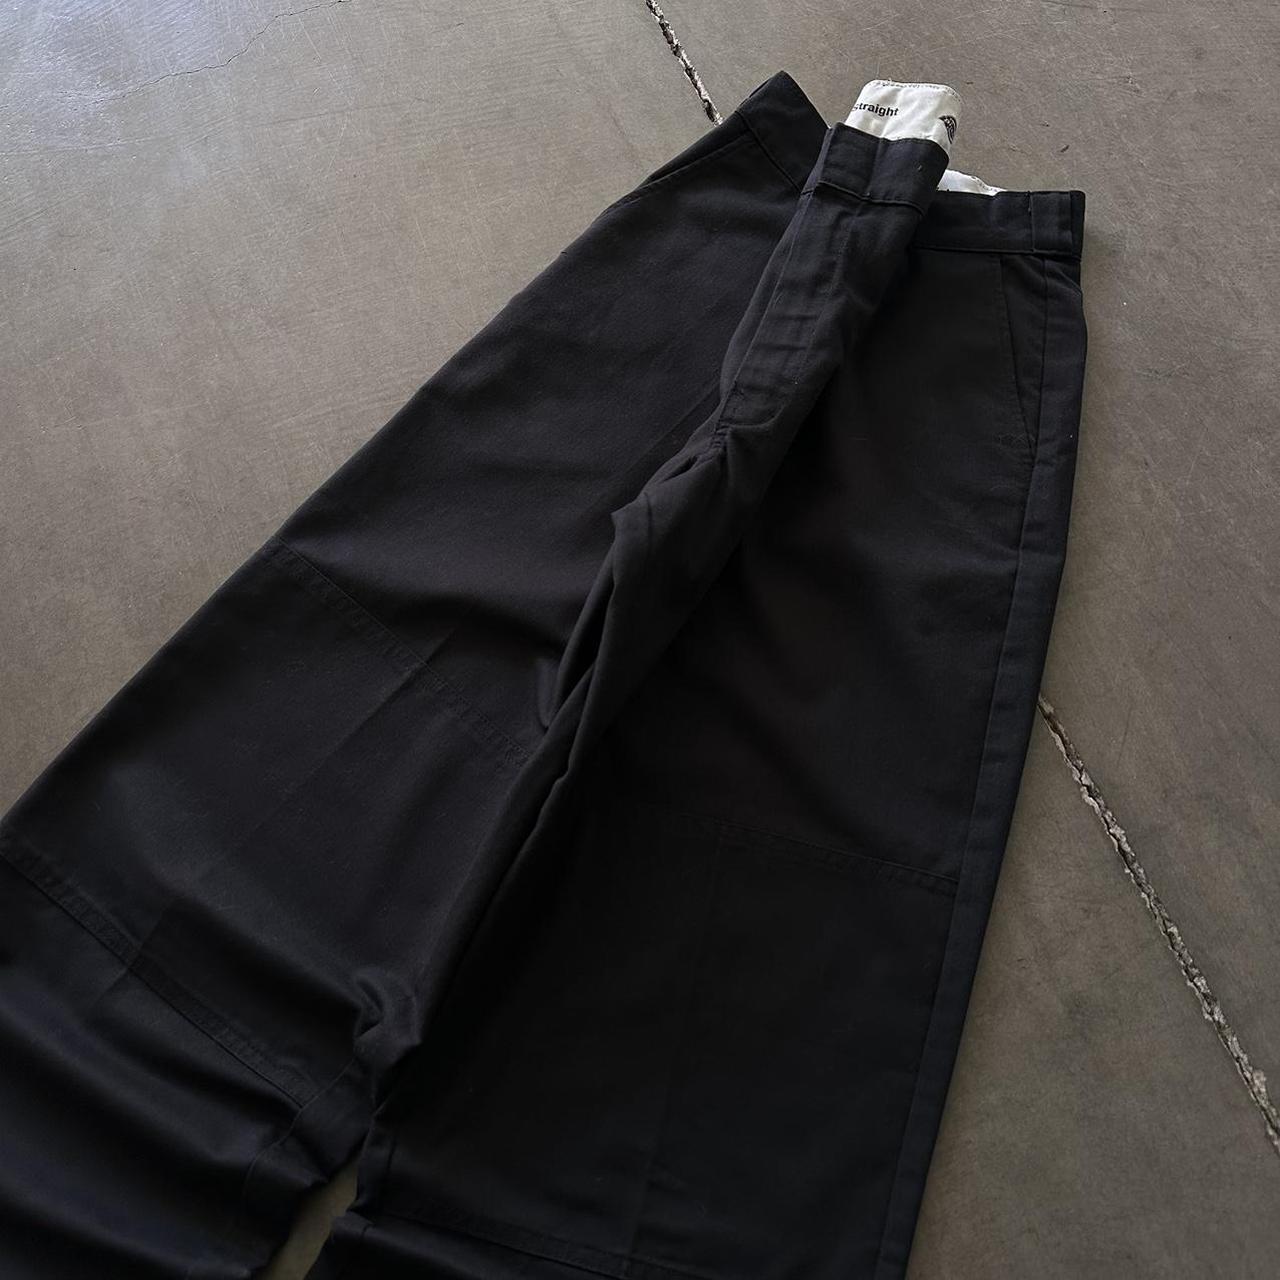 Y2K grunge baggy faded work pants 2000s rare black... - Depop